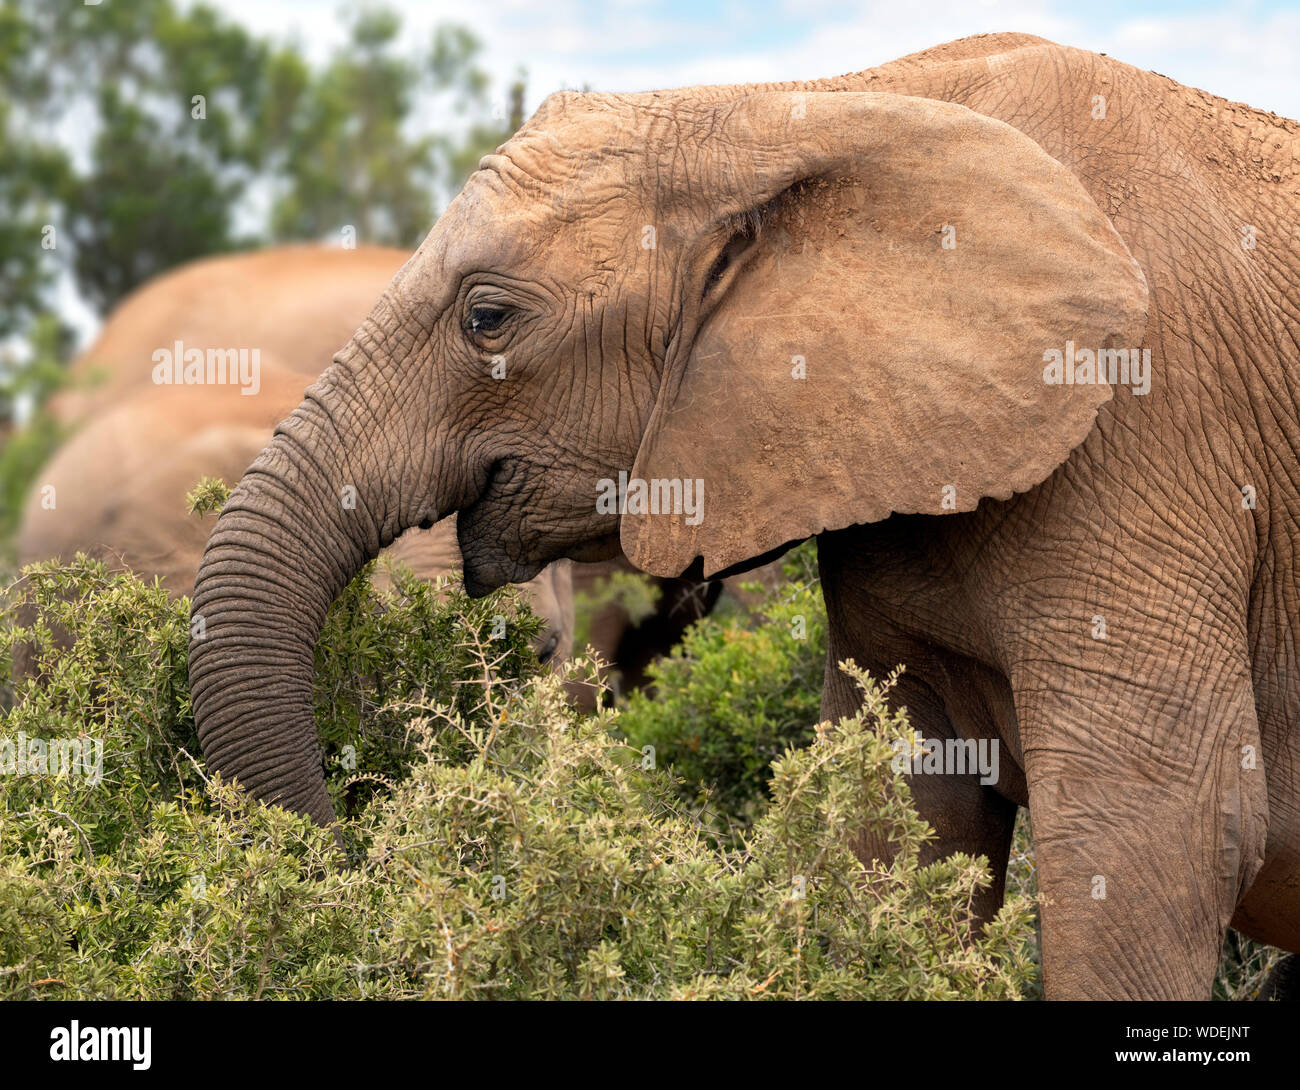 L'éléphant africain (Loxodonta africana ) le pâturage dans le parc national des éléphants d'Addo, Port Elizabeth, Eastern Cape, Afrique du Sud Banque D'Images